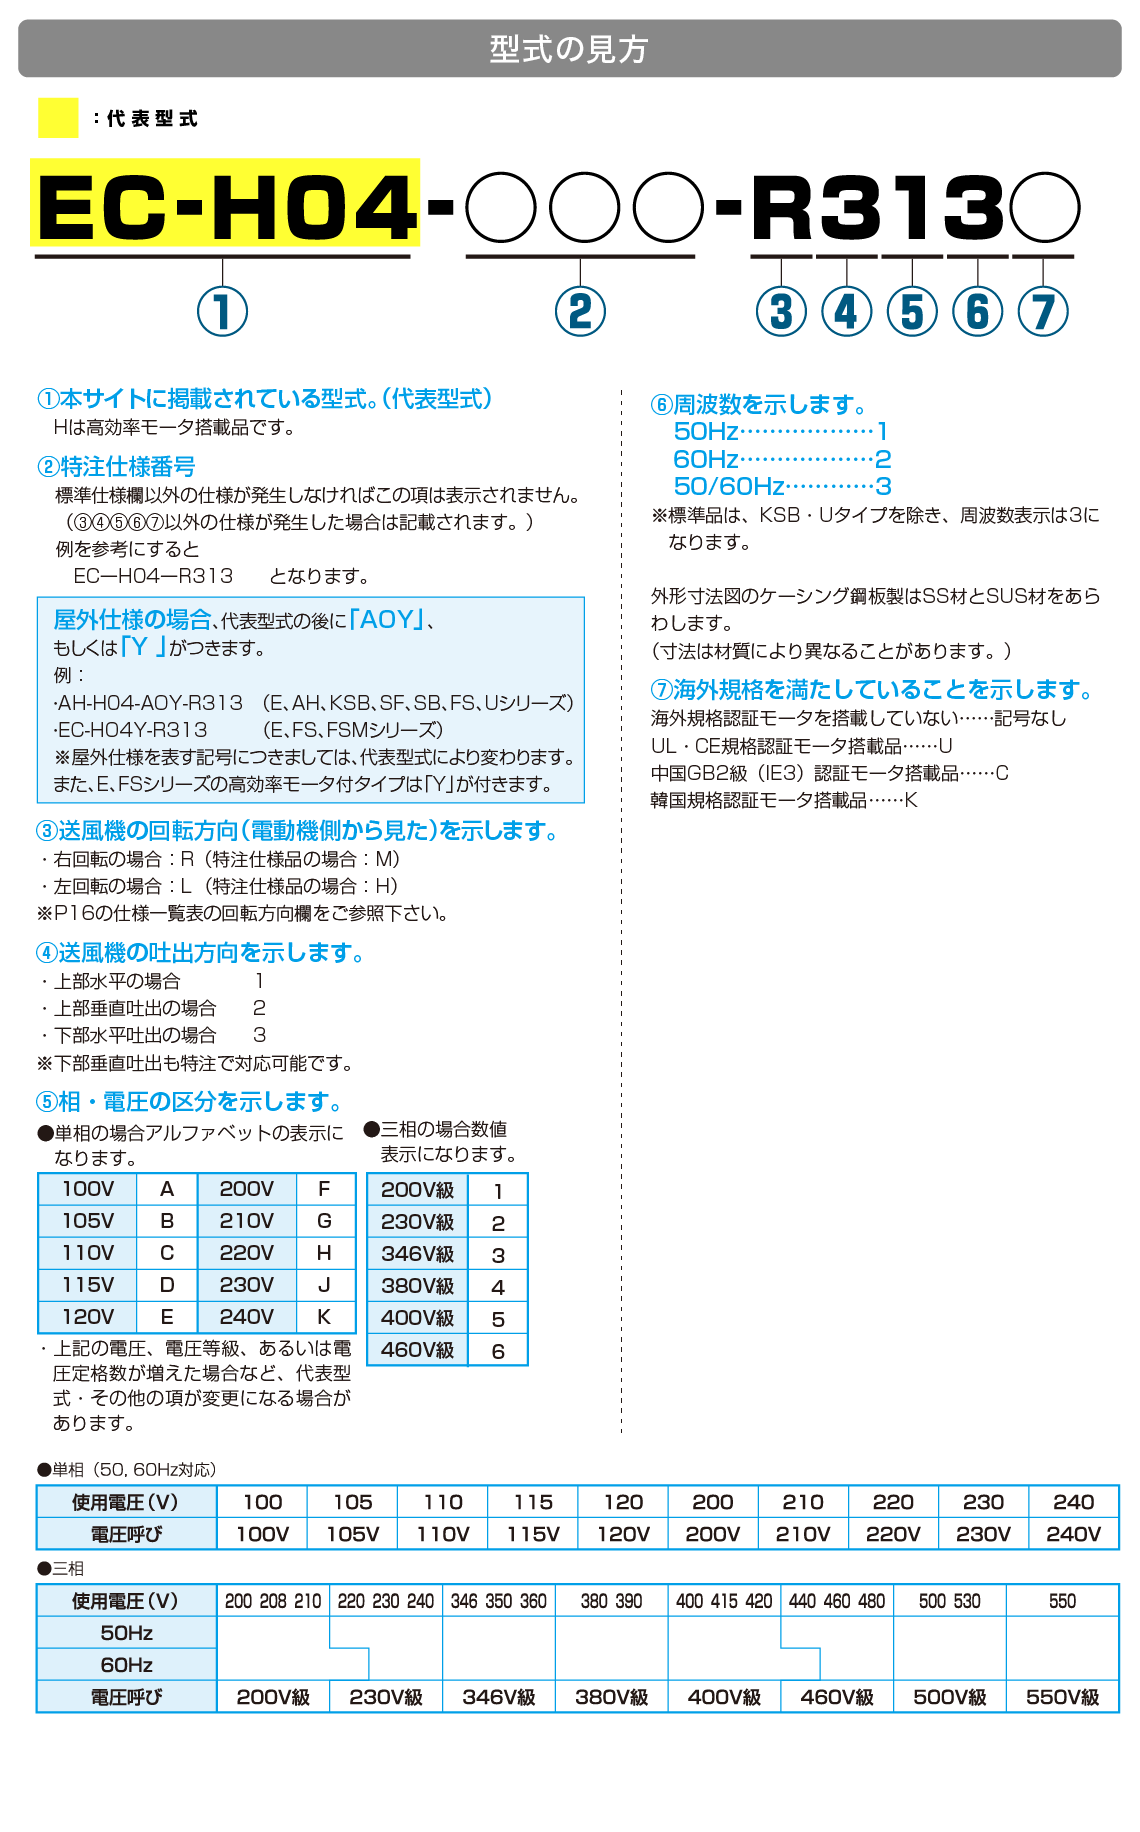 昭和電機株式会社 製品情報サイト | 高圧シリーズ (KSB)